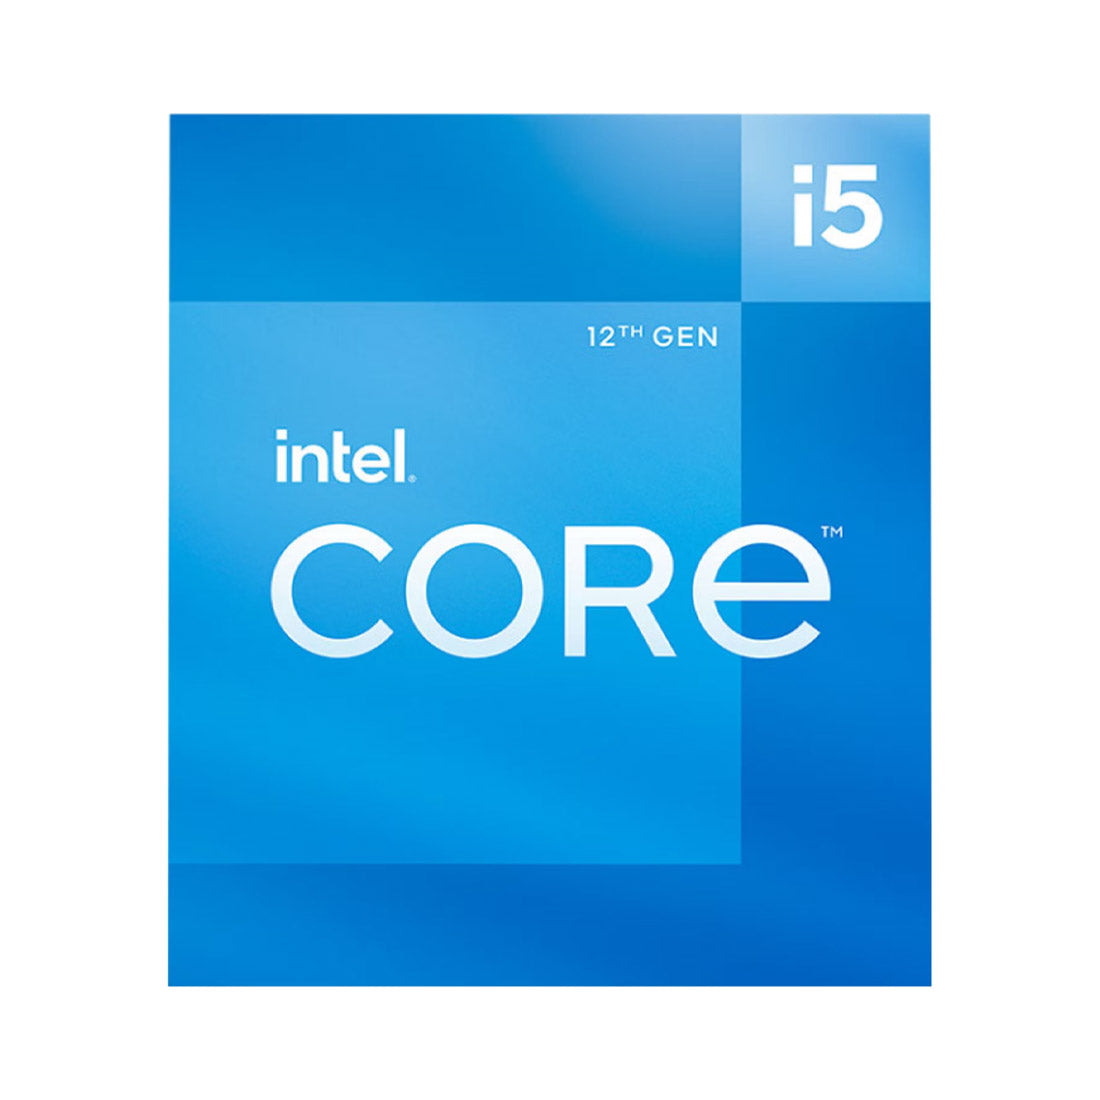 Intel Core 12th Gen i5-12400 LGA1700 Desktop Processor 6 Cores up to 4.4GHz 18MB Cache